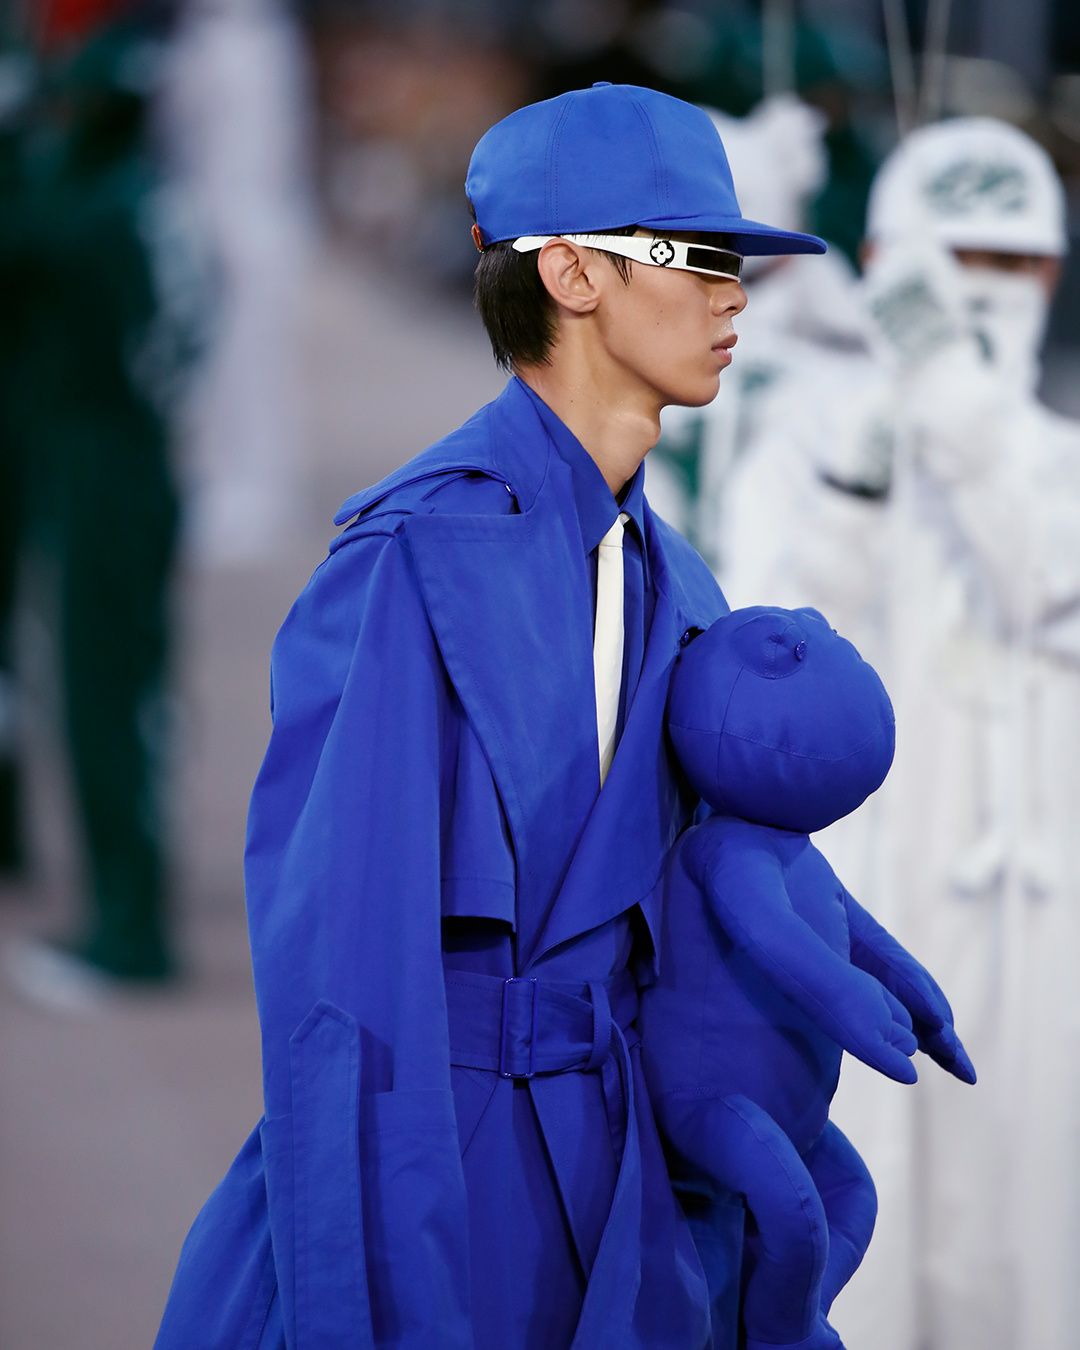 Where are Louis Vuitton handbags made? - Quora